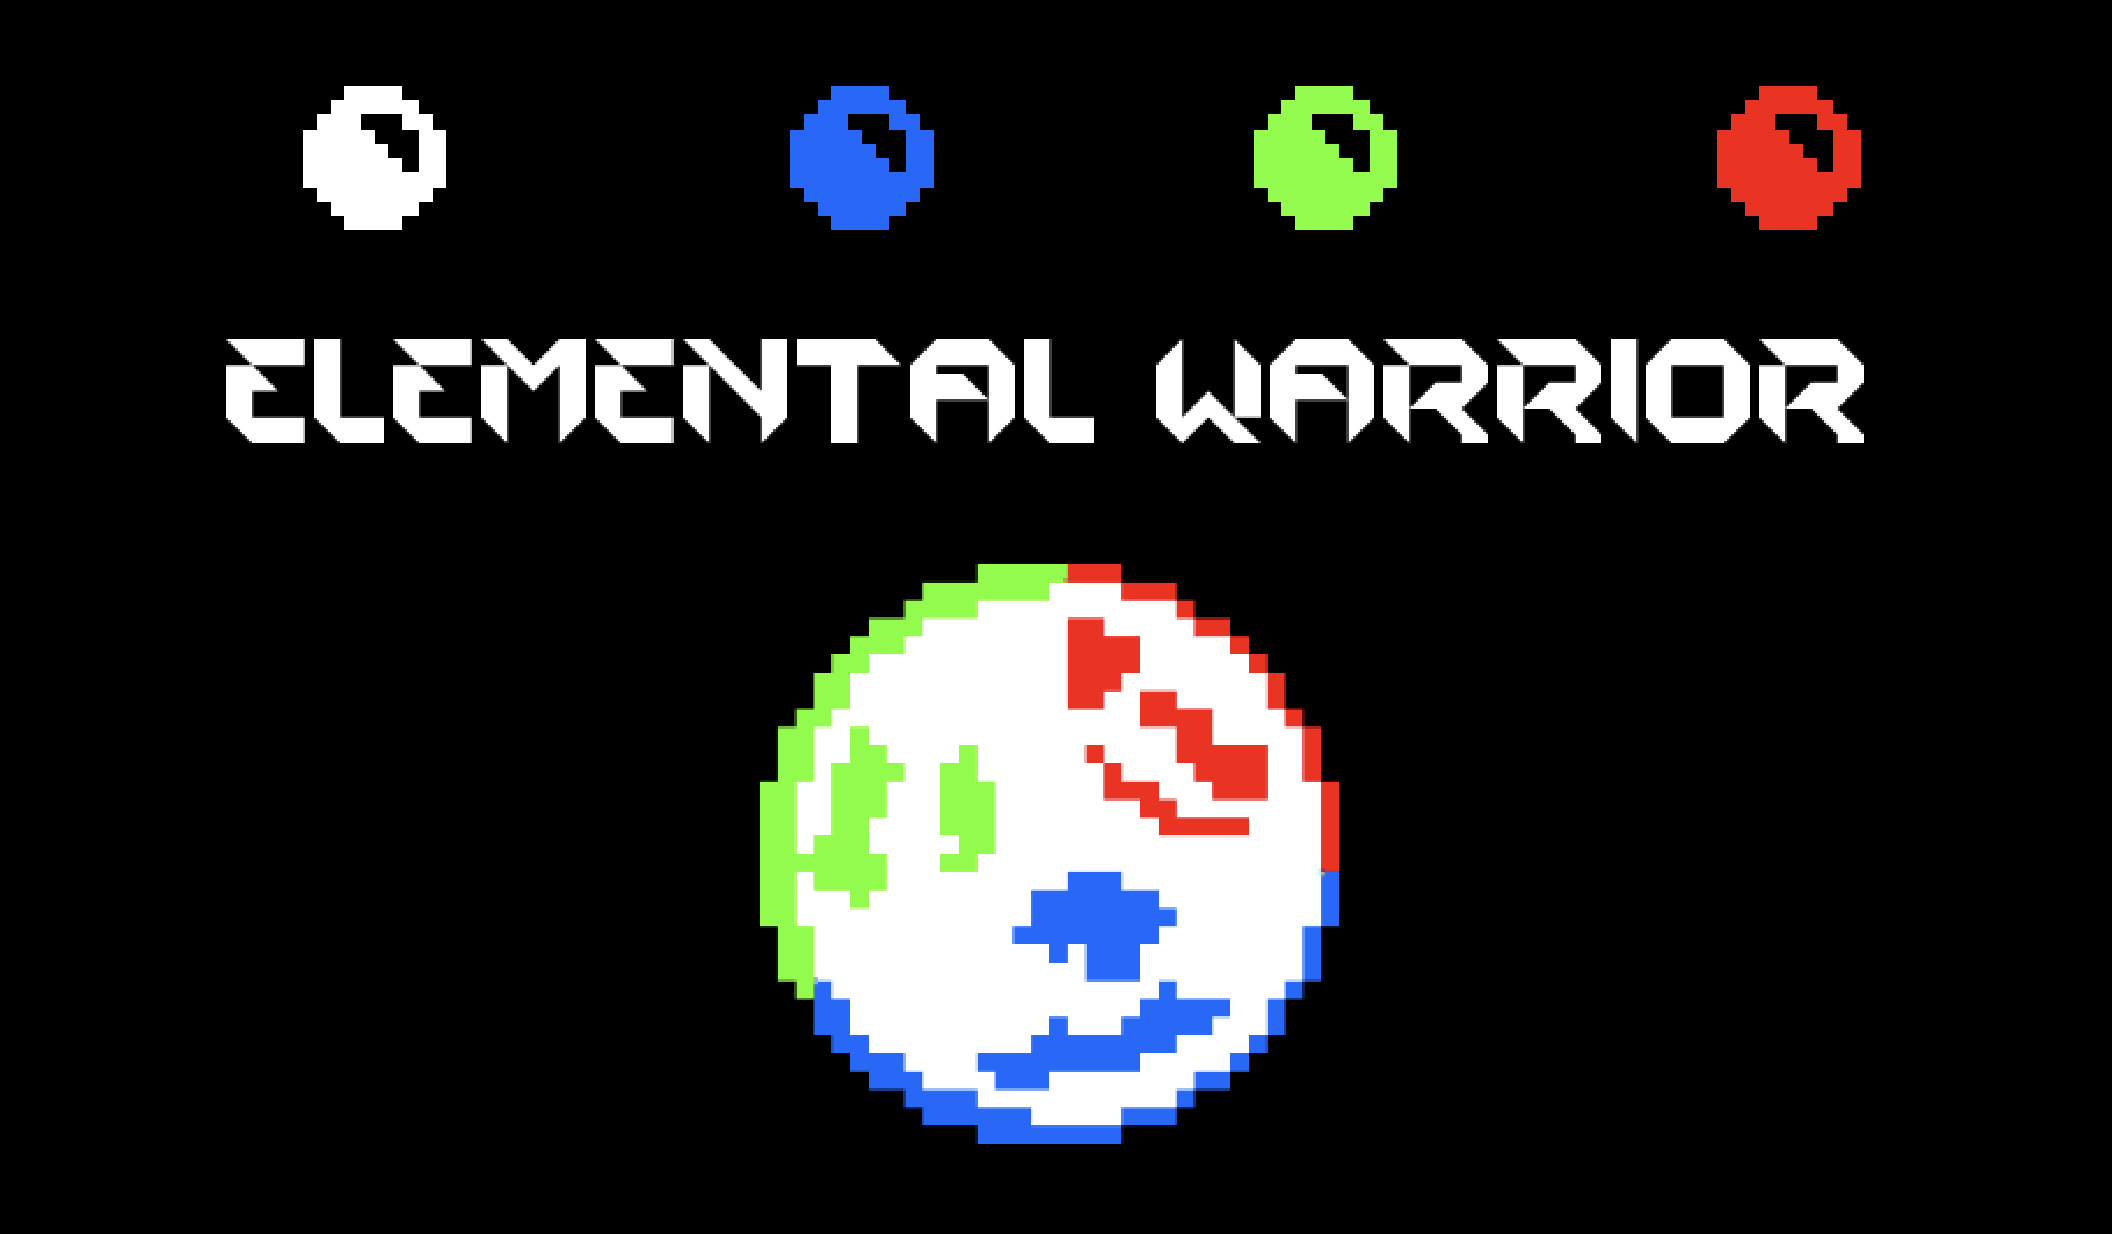 Elemental Warrior